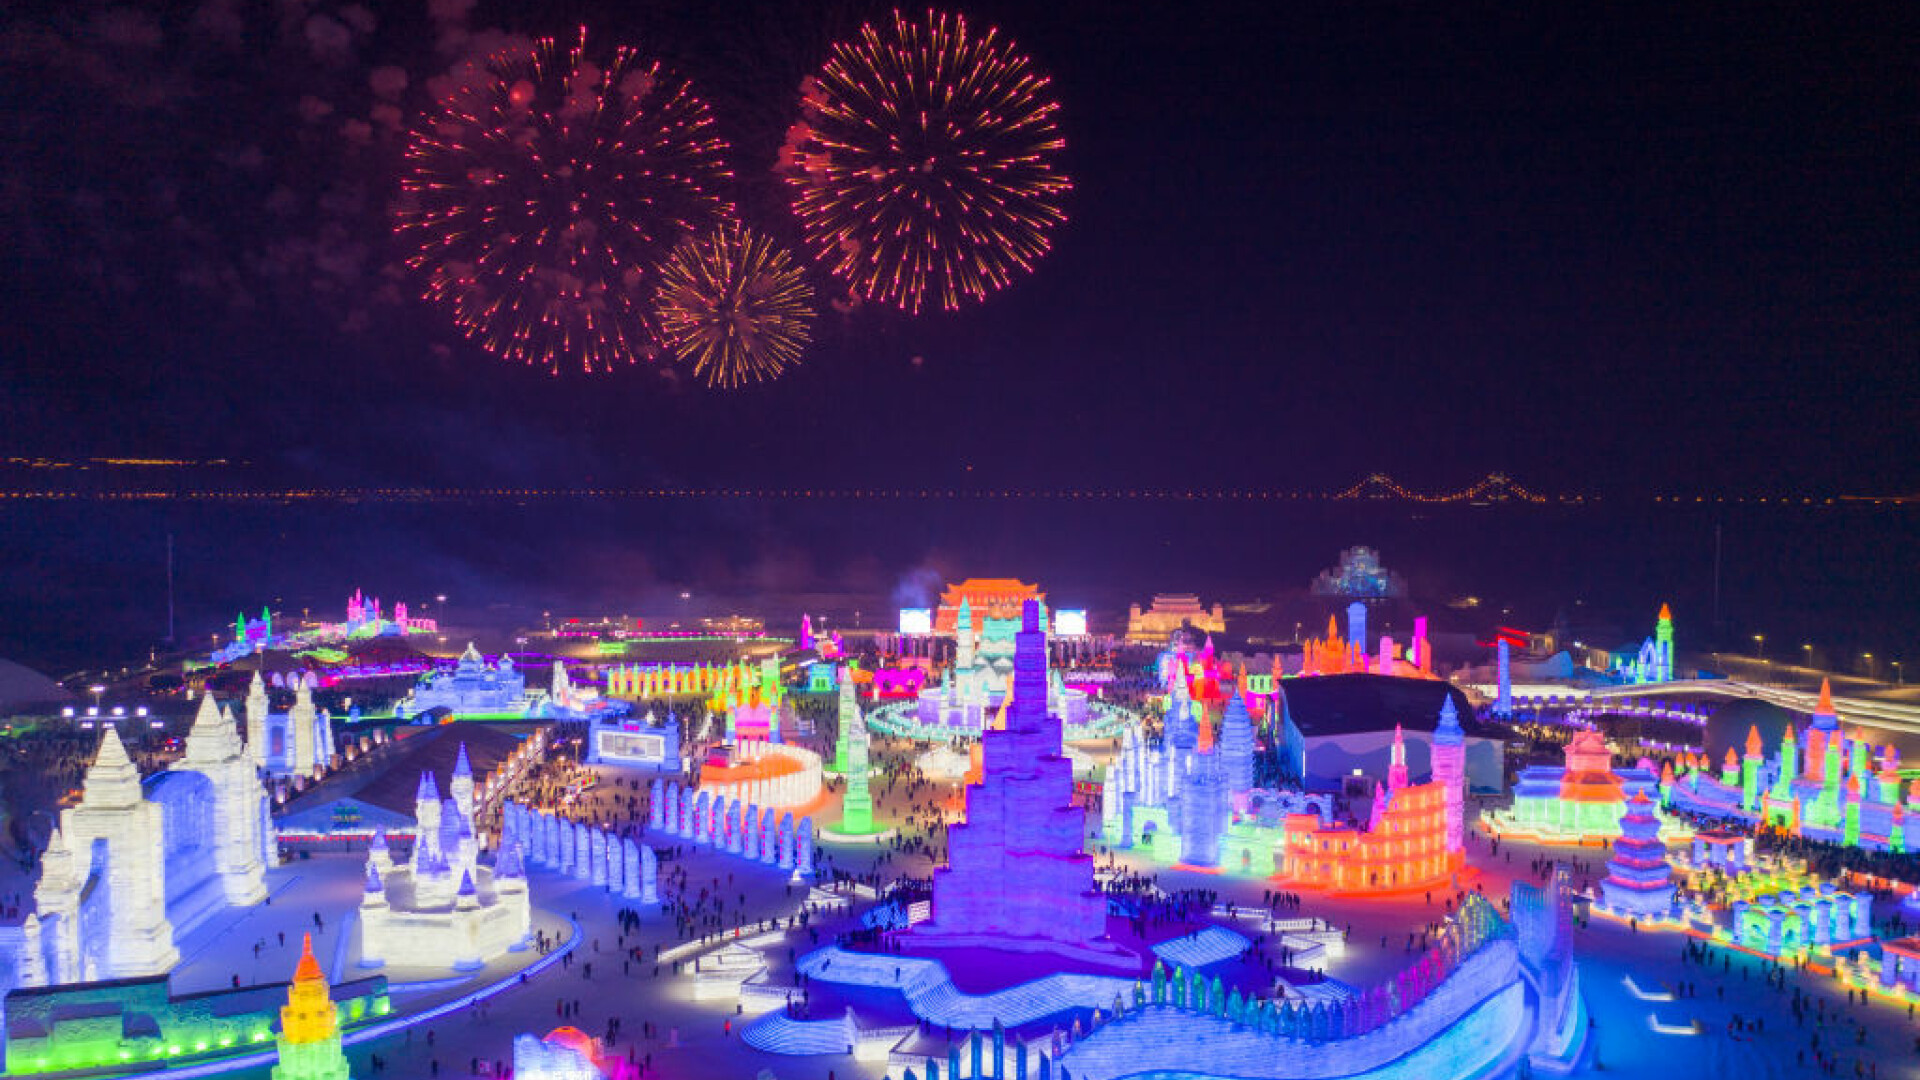 Imagini de basm la Festivalul de gheață Harbin, din China